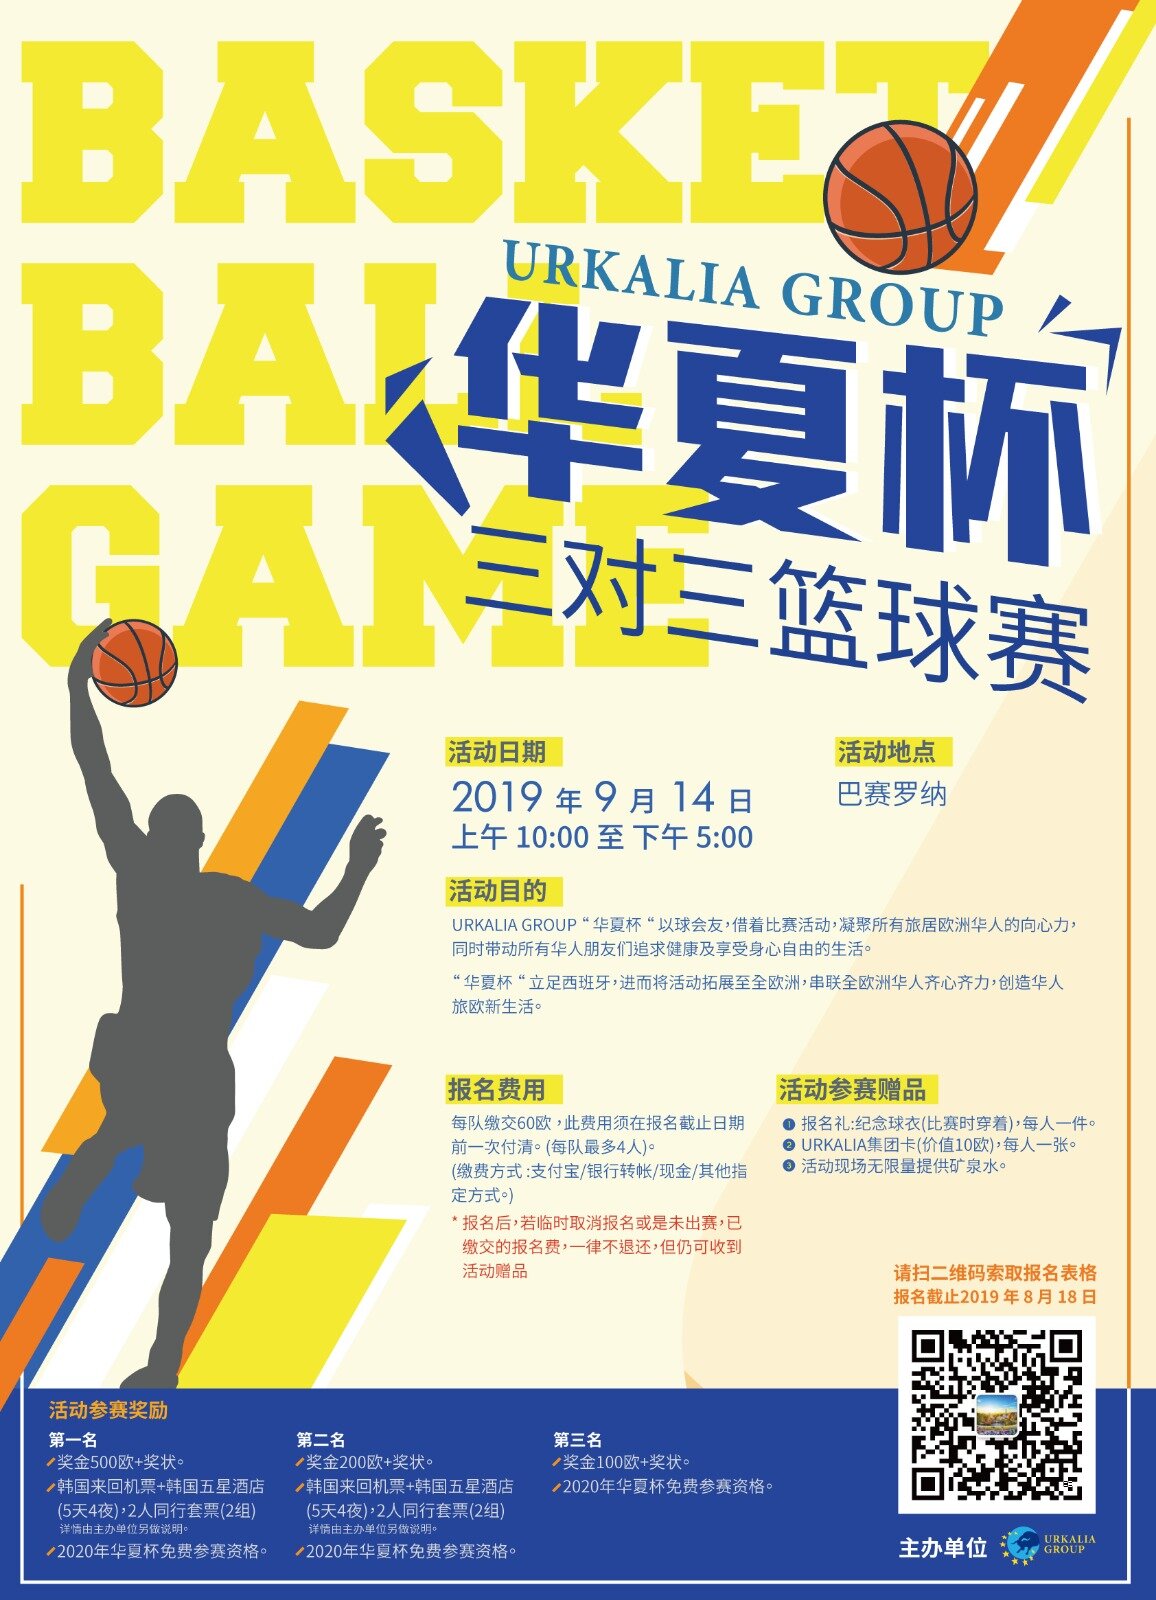  喜爱篮球活动的华人朋友们，  快点来了解更多"华夏杯"的活动内容